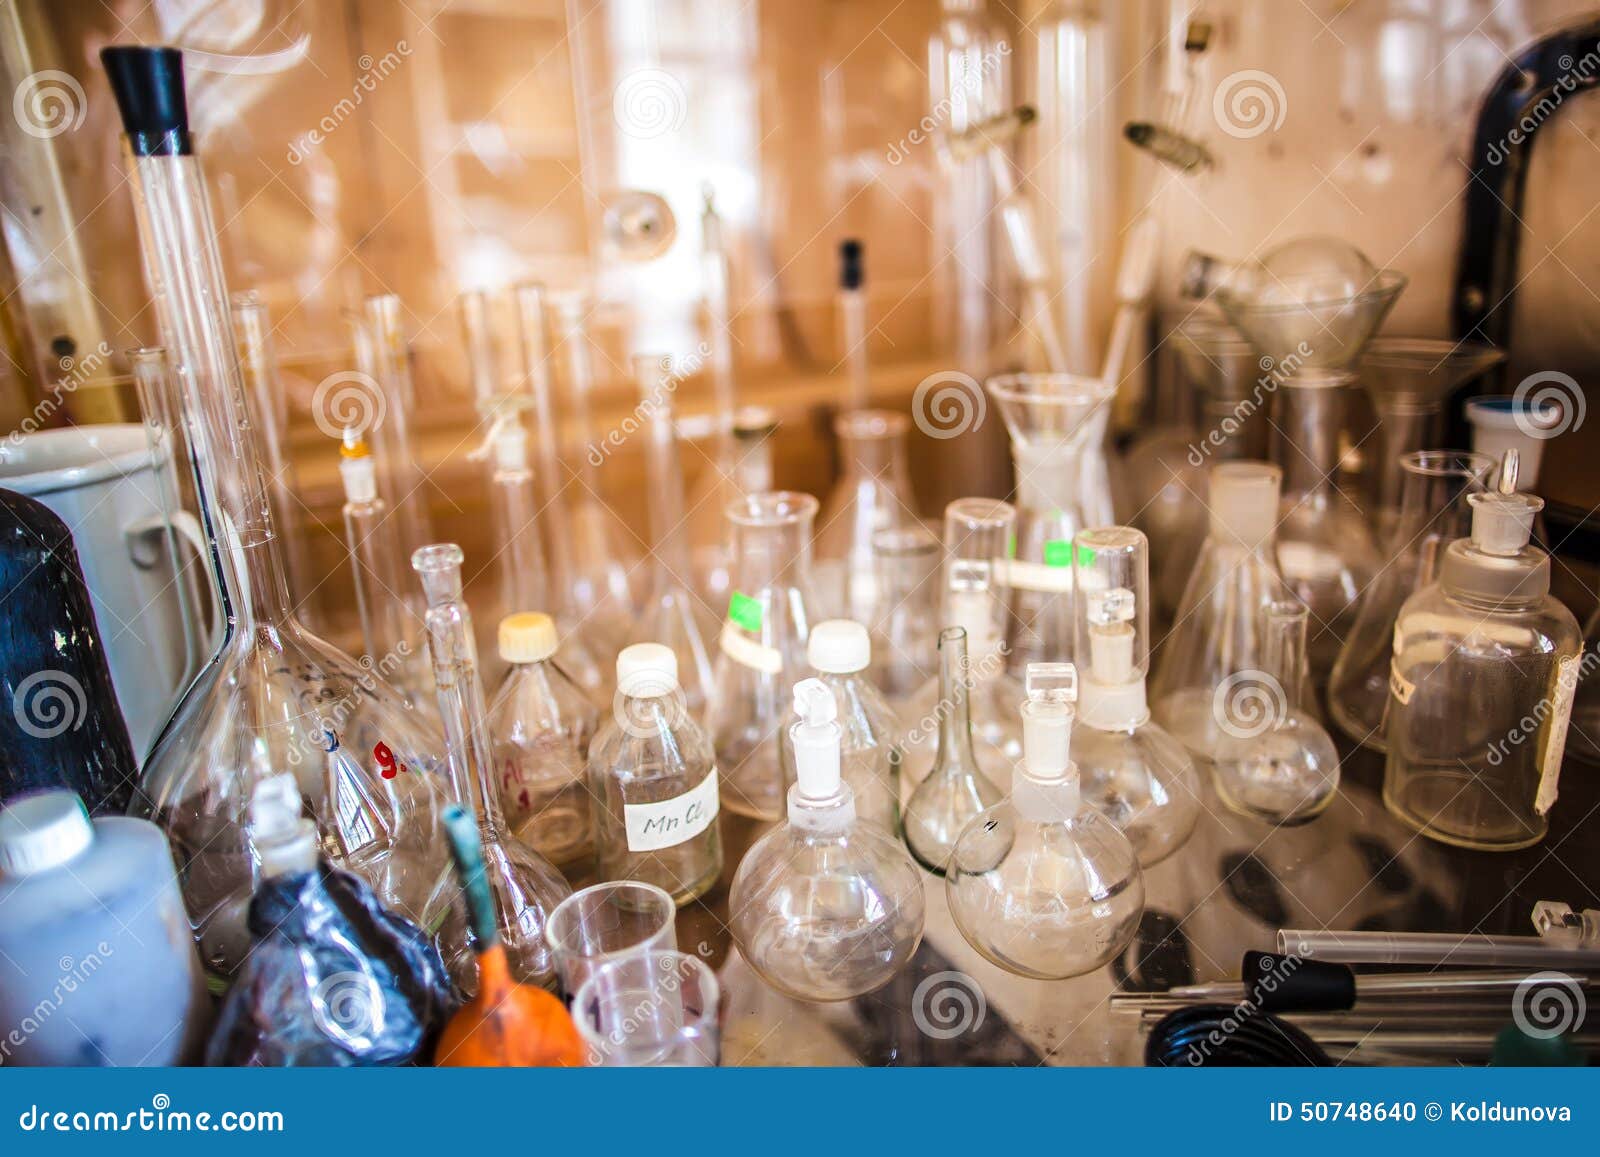 Игры реагенты в колбах. Лаборатория колбы. Колбы для химической лаборатории. Лаборатория стол с пробирками. Химический стол с колбами.